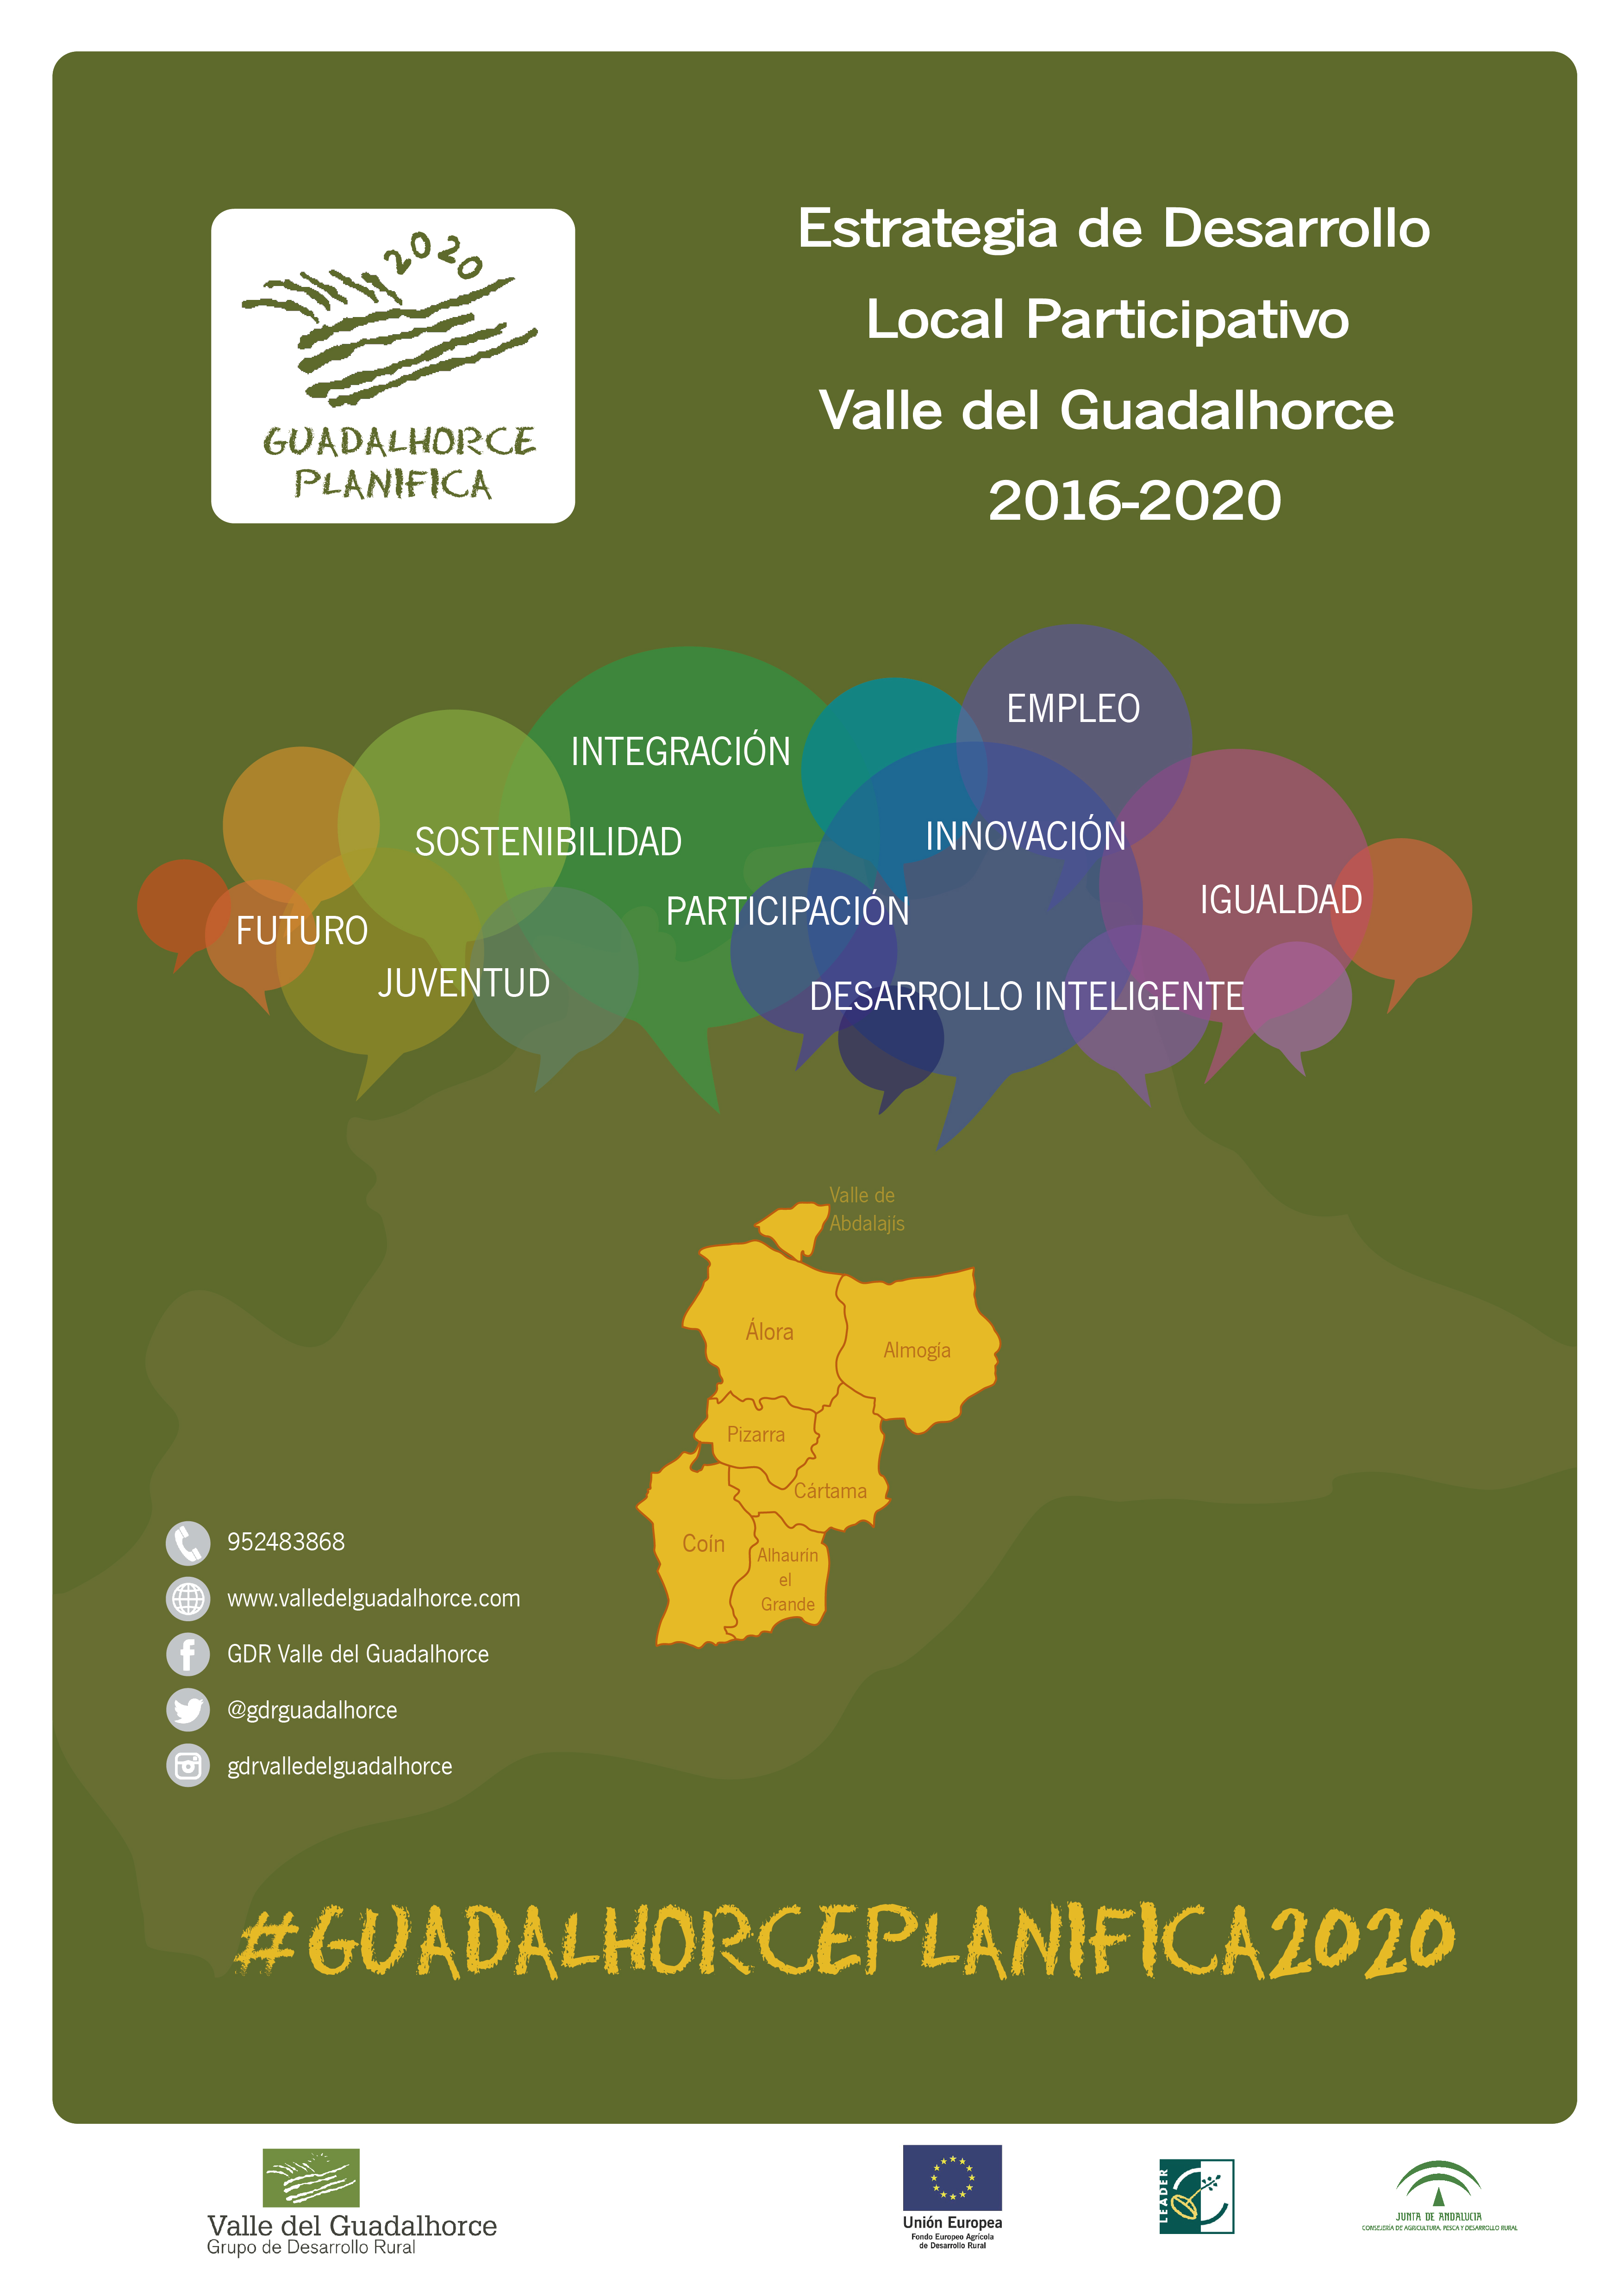 Hasta el prximo lunes 1 de Agosto, es posible hacer aportaciones a la Estrategia de Desarrollo Local del Valle del Guadalhorce para el periodo 2014-2020